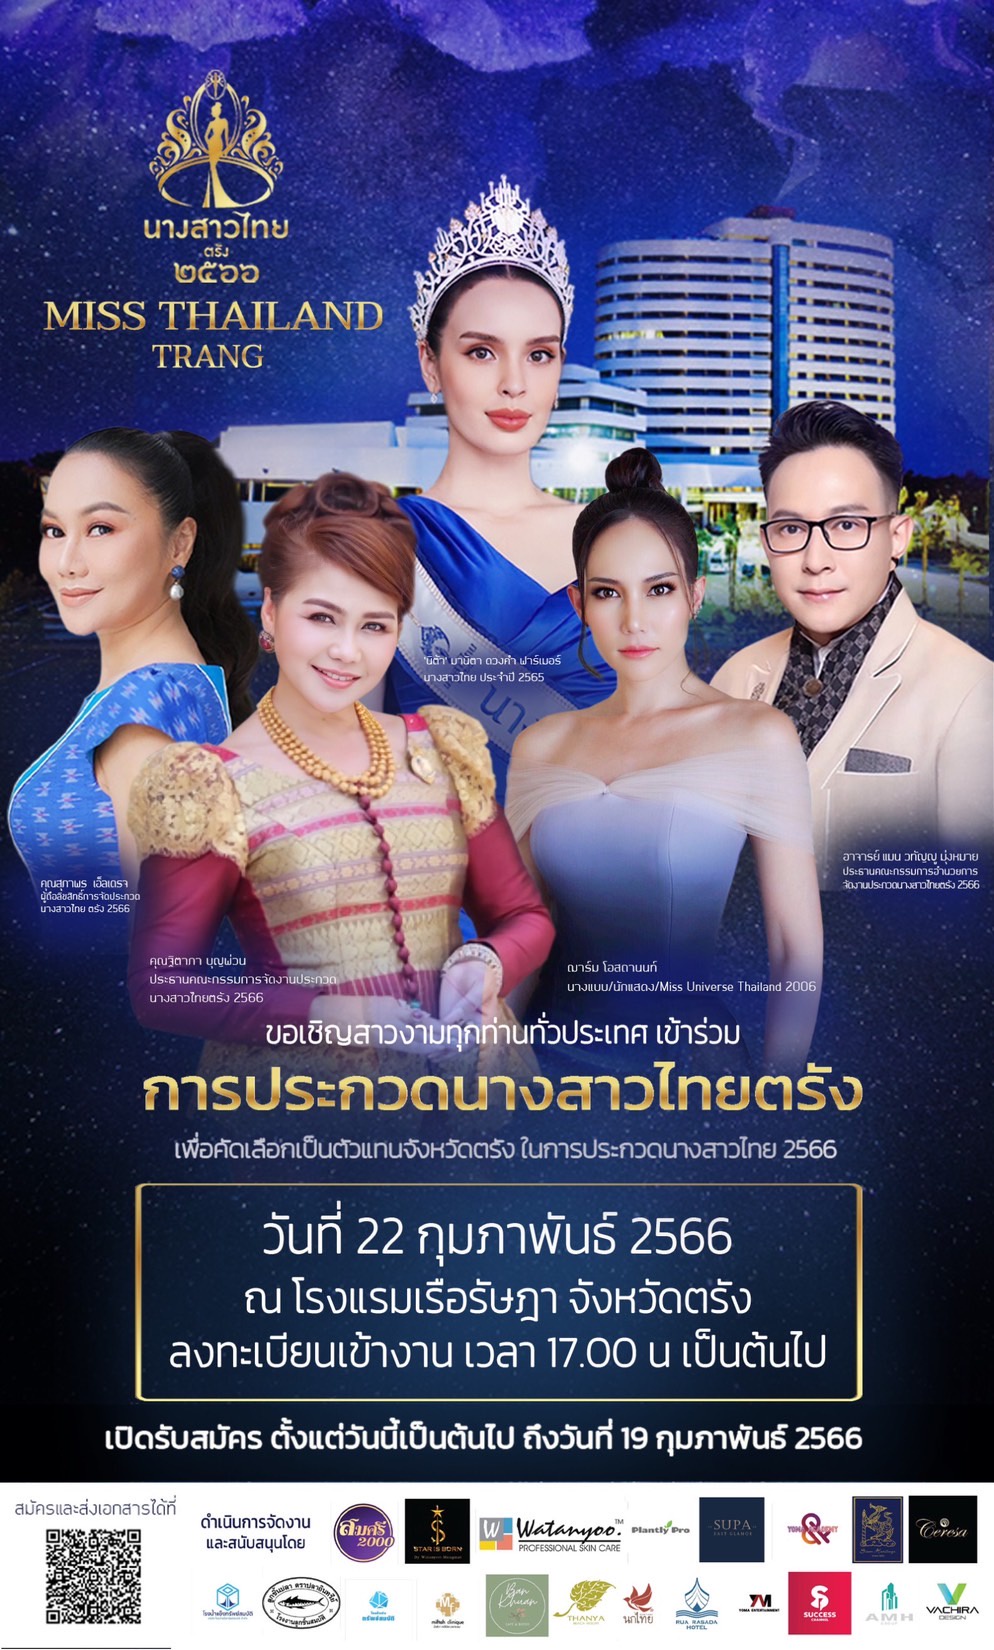 กองประกวดนางสาวไทยจังหวัดตรังจัดประกวดคัดสาวงามเพื่อเข้าชิงตำแหน่ง Miss Thailand 2023 วันที่ 22 กุมภาพันธ์นี้ที่จังหวัดตรัง